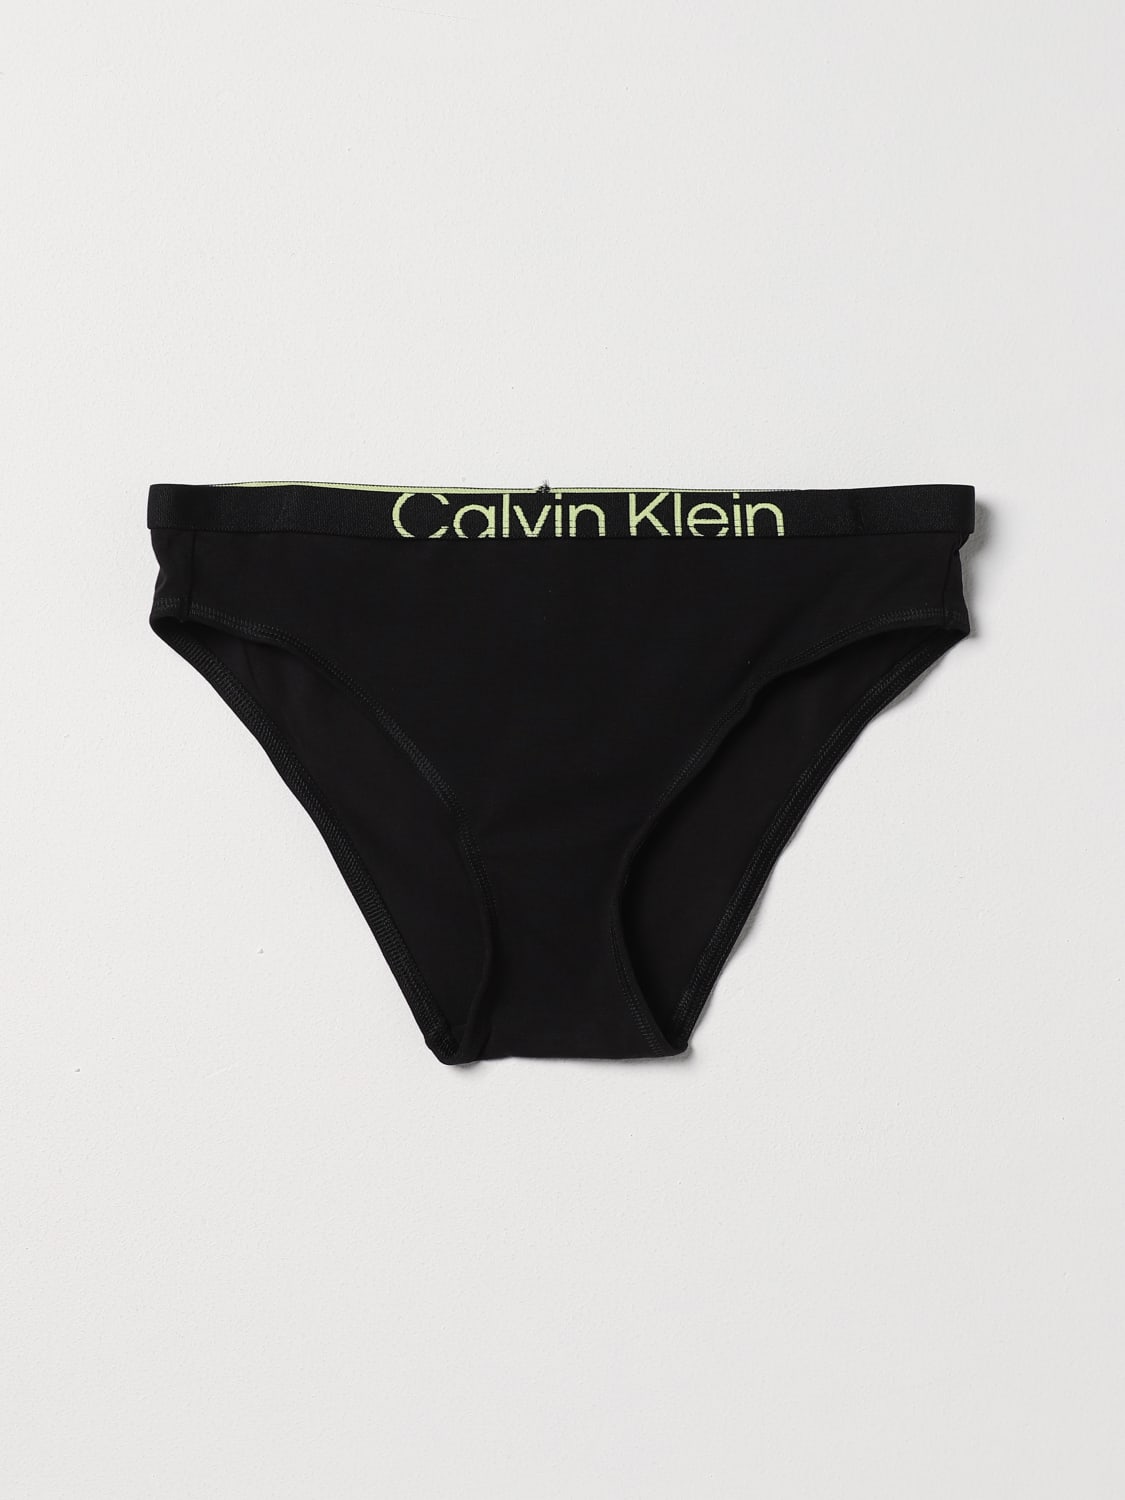 CALVIN KLEIN UNDERWEAR: Lingerie woman Ck Underwear - Black  CALVIN KLEIN  UNDERWEAR lingerie 000QF7403E online at